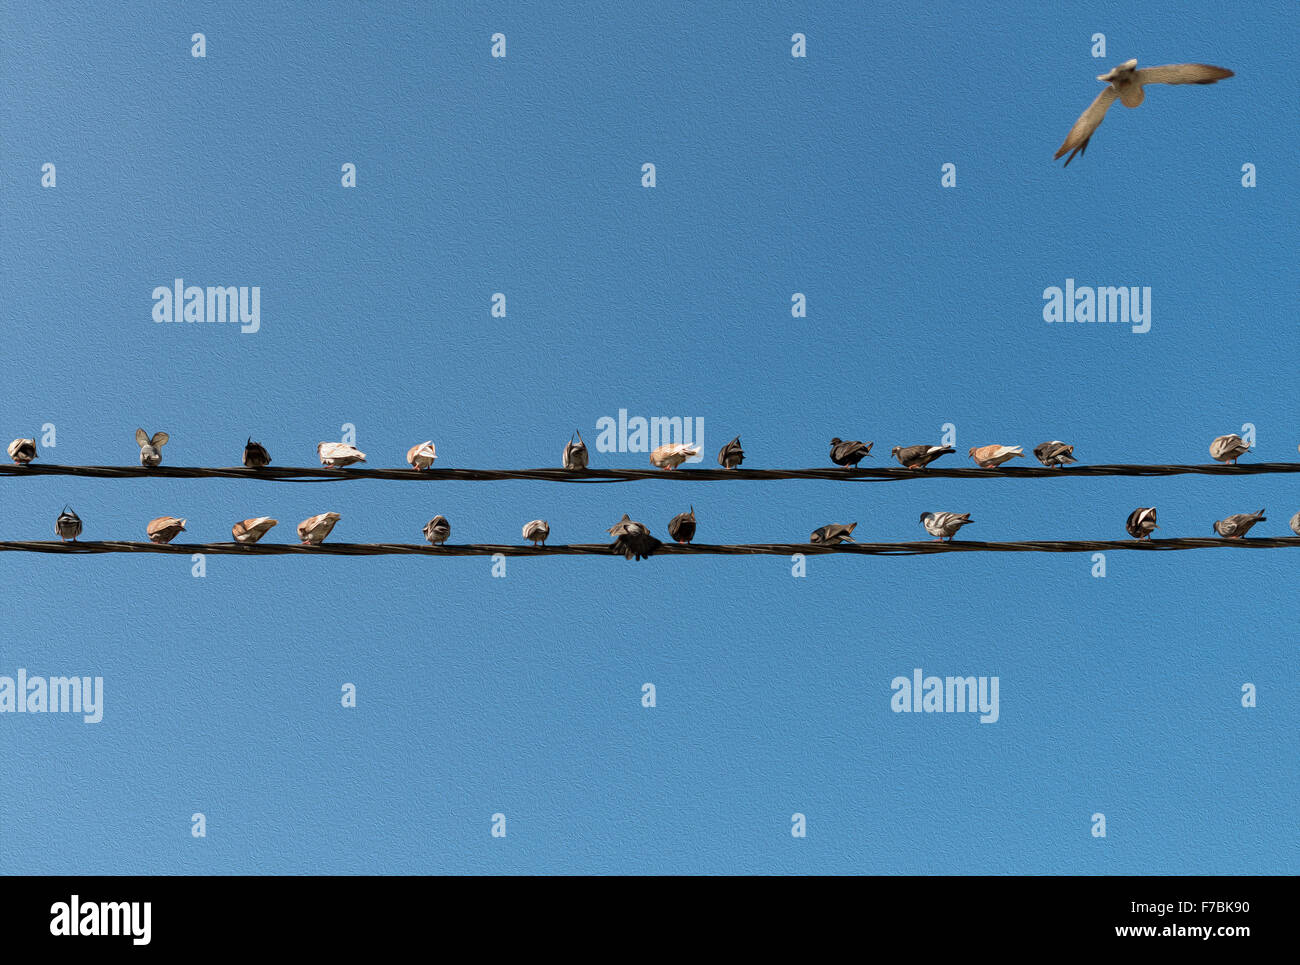 Tauben sitzen auf Drähte wie Musiknoten. Stockfoto